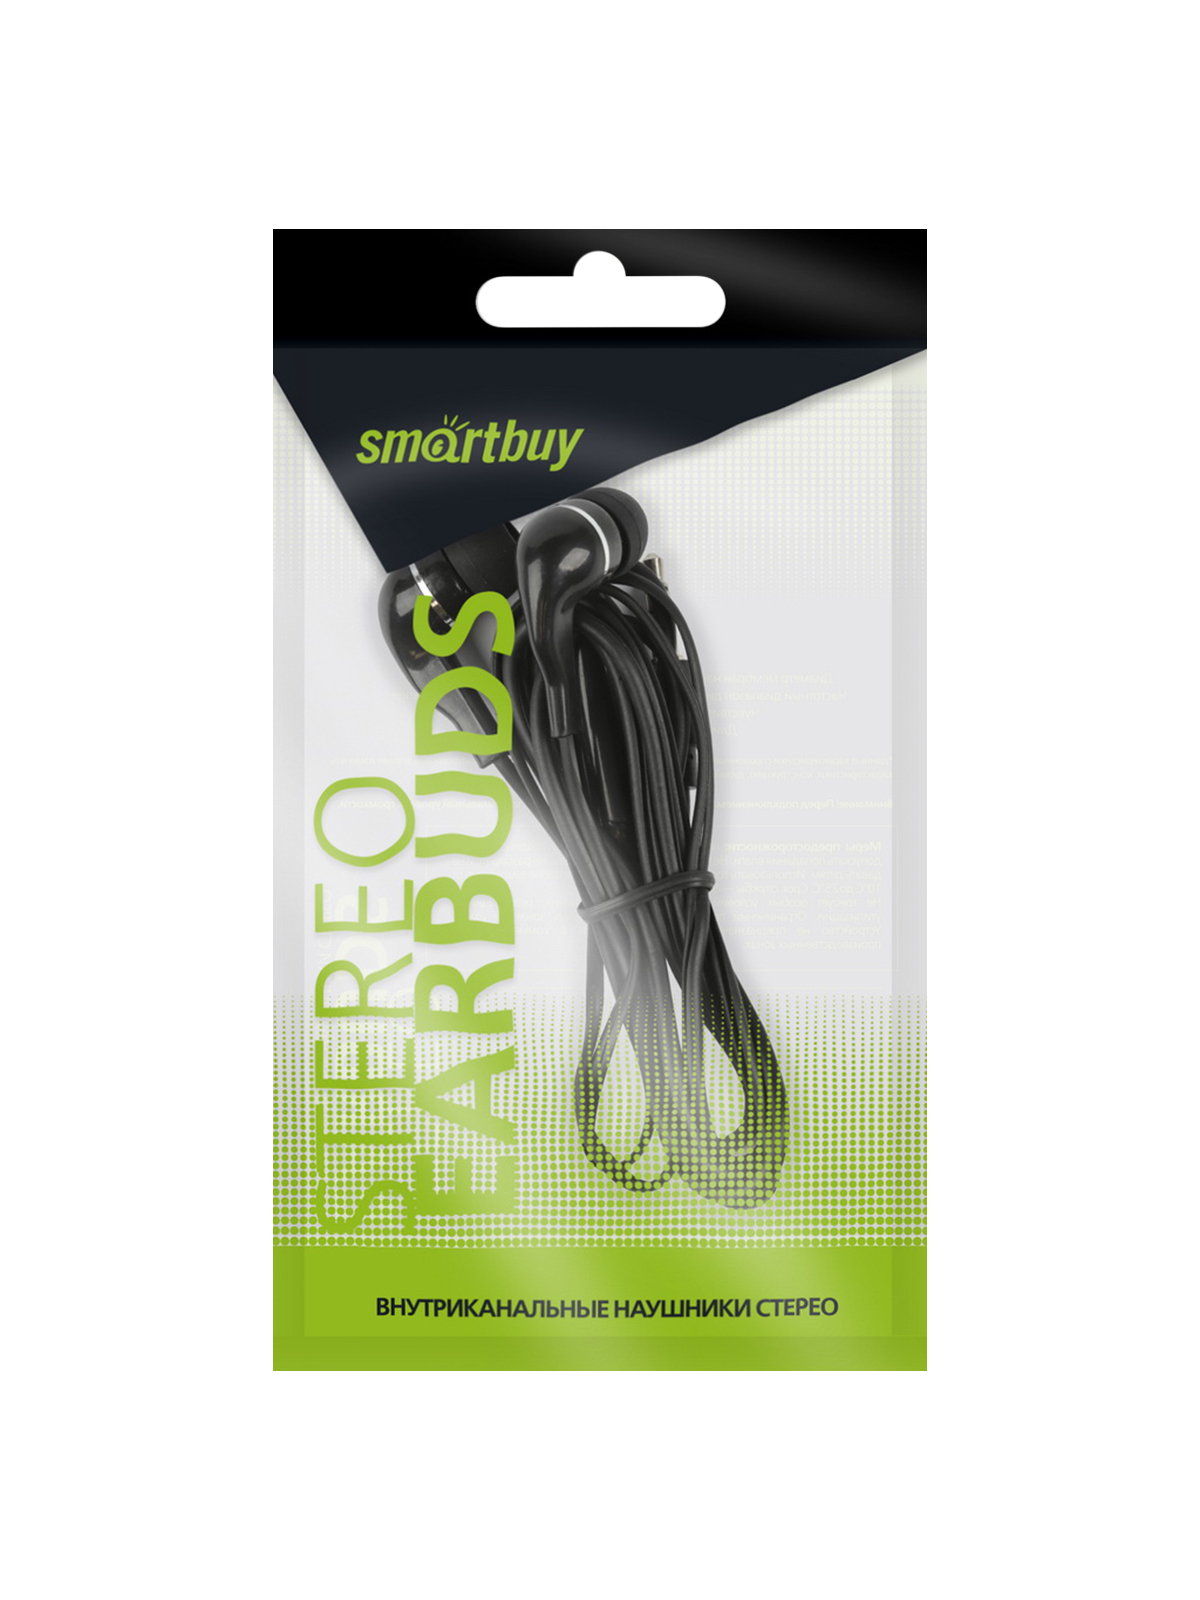 Внутриканальные наушники Smartbuy A4, черные, цветной пакет (SBE-011) / 100